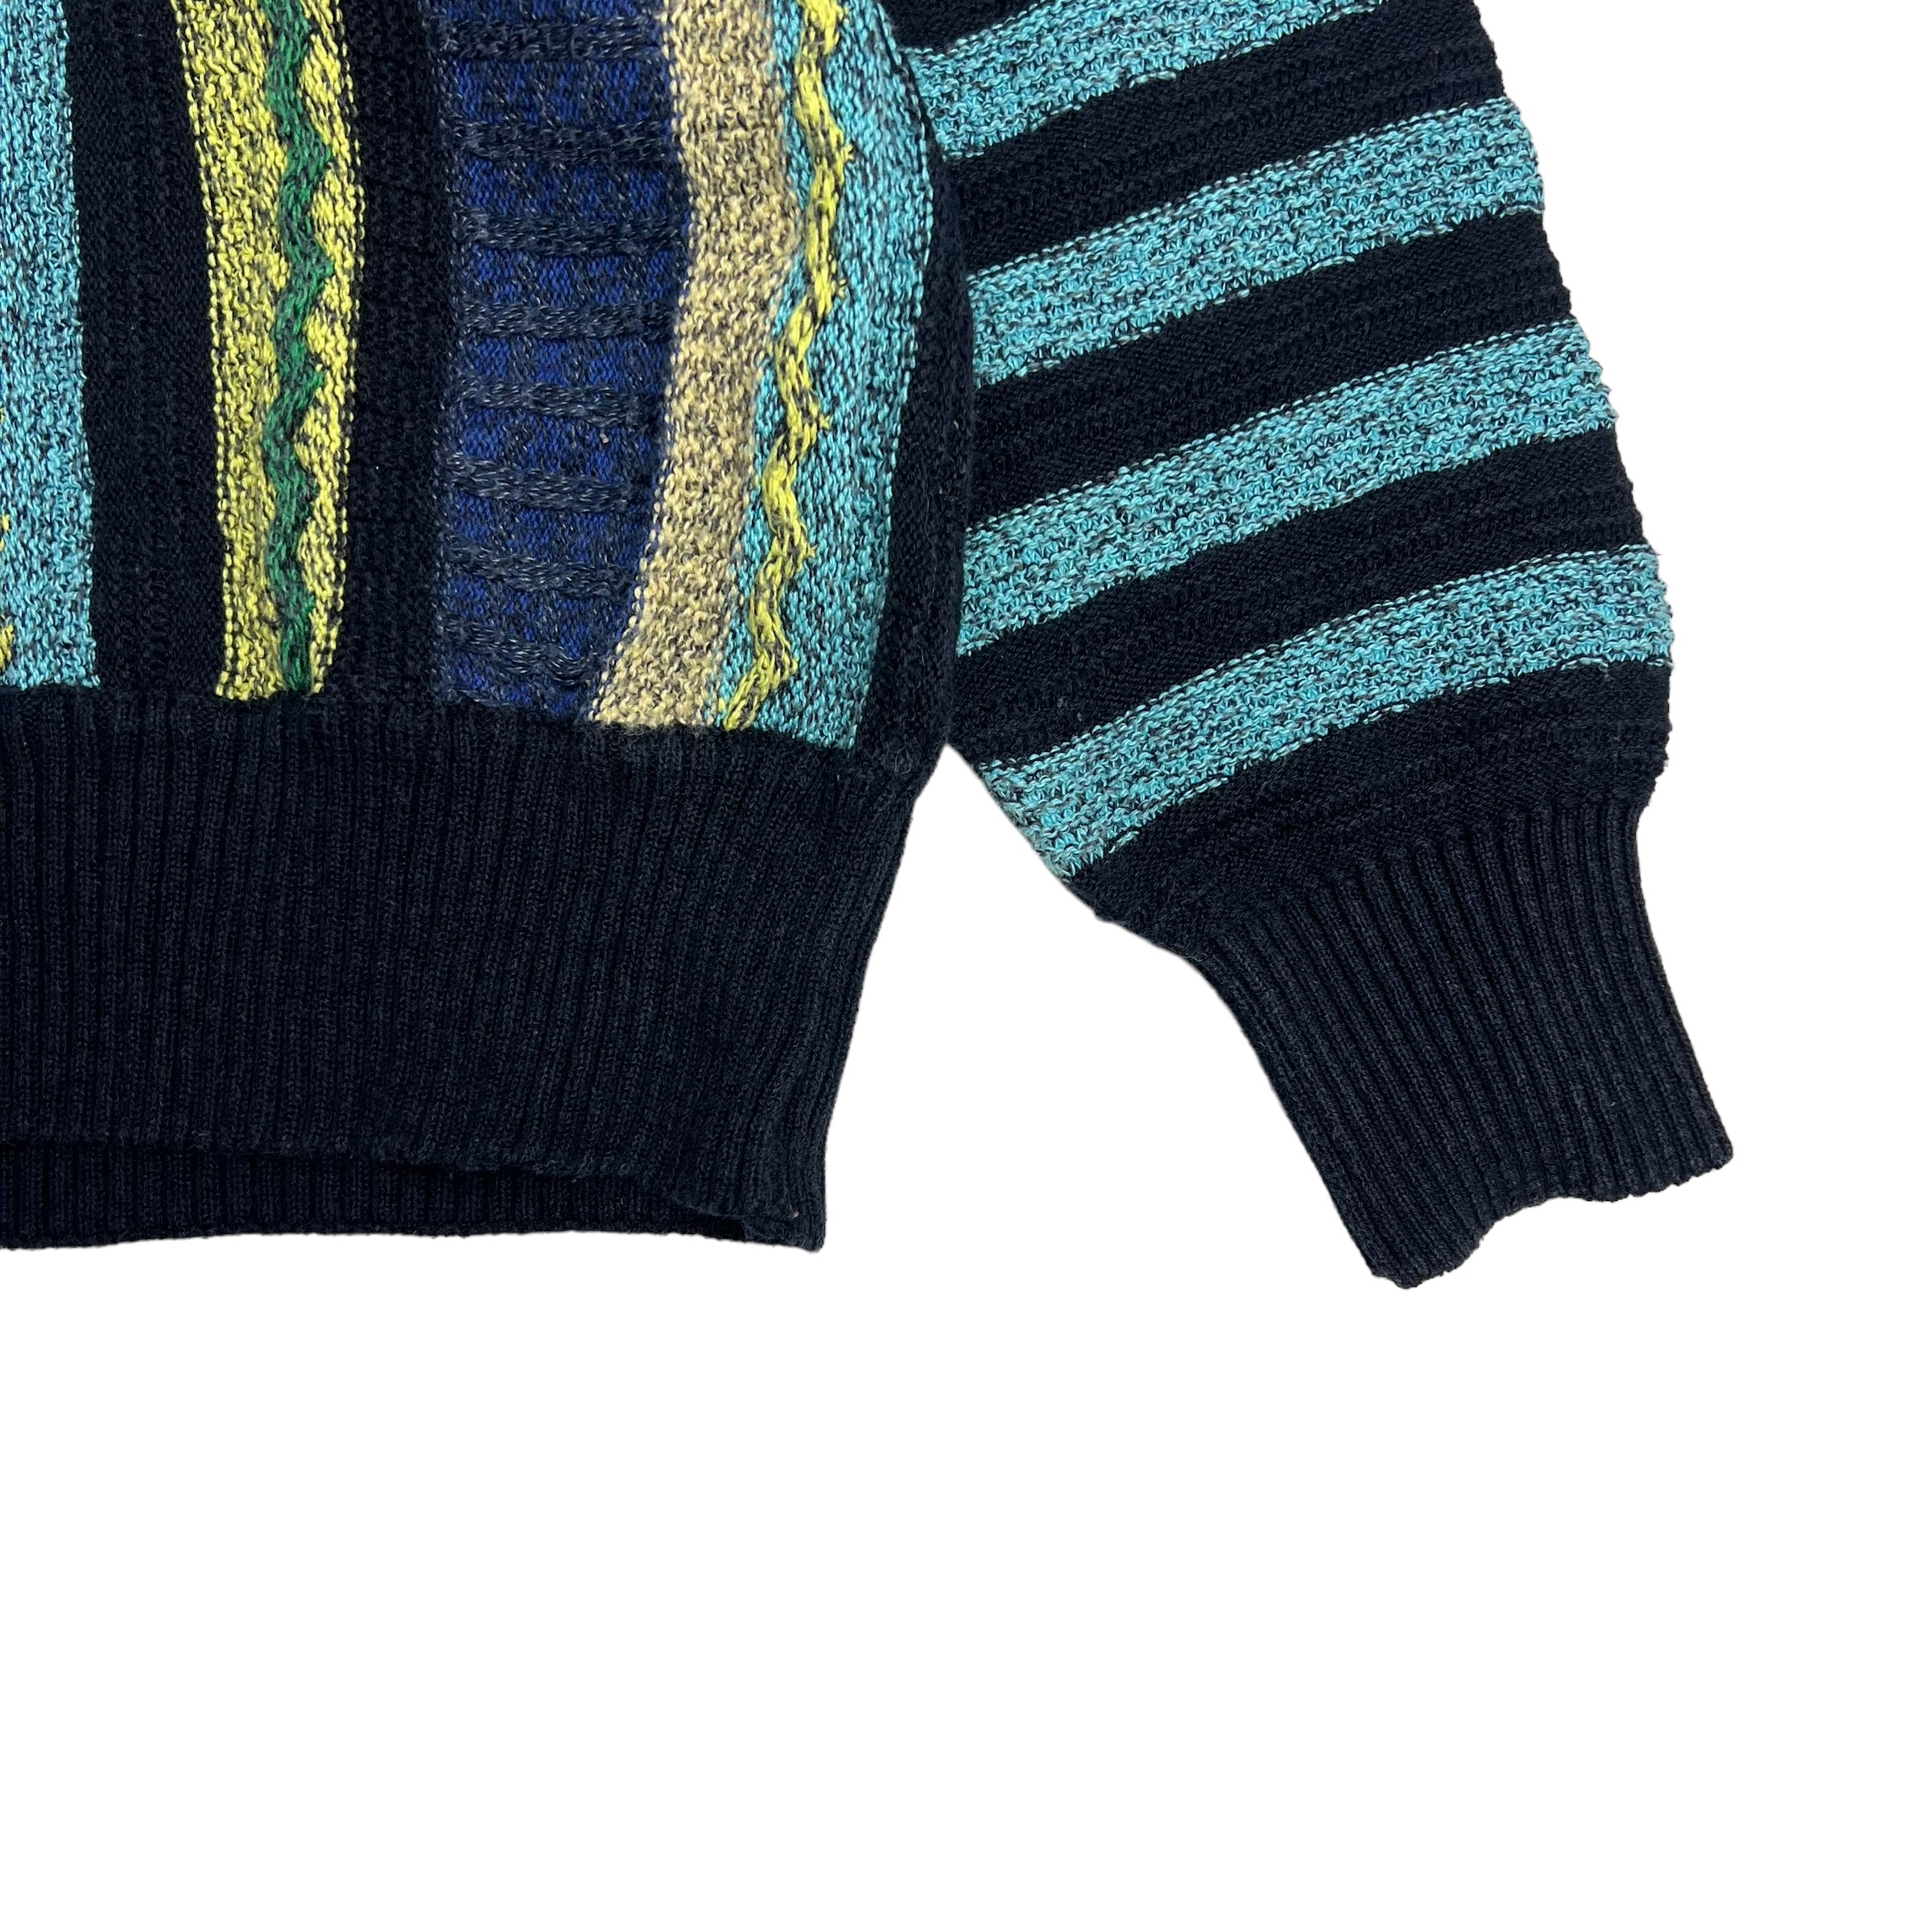 Vintage Fairbanks Knit Sweater